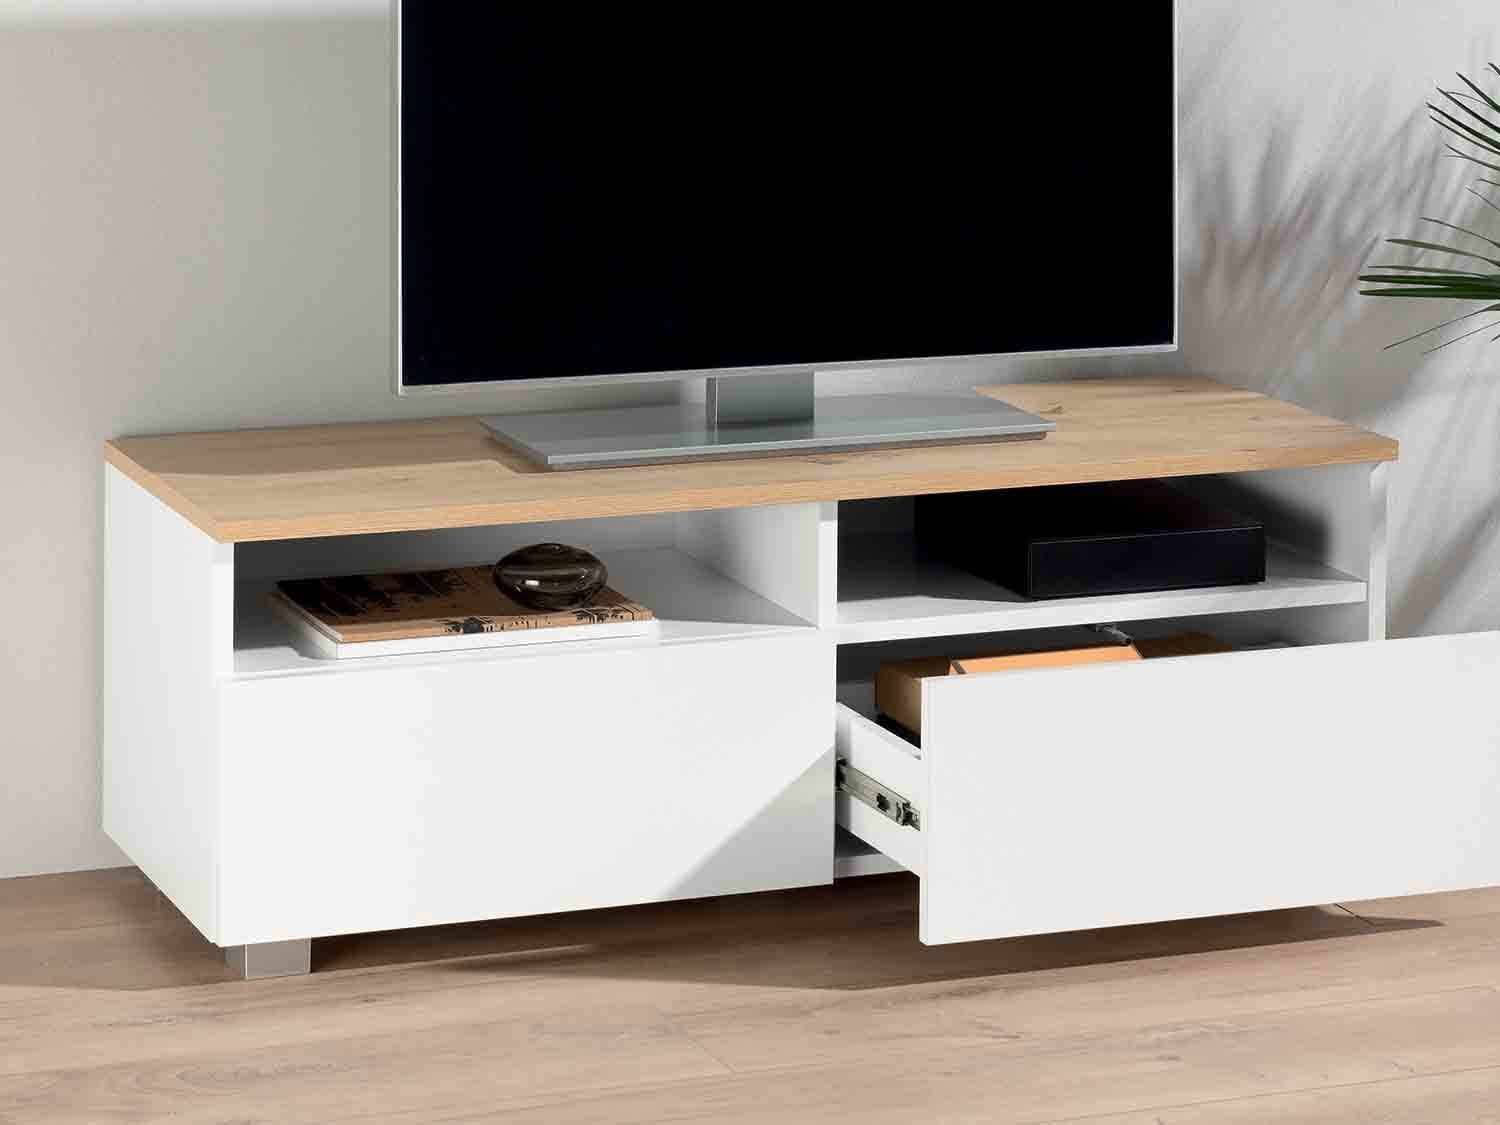 Muebles Lidl: mueble de televisión con dos compartimentos.